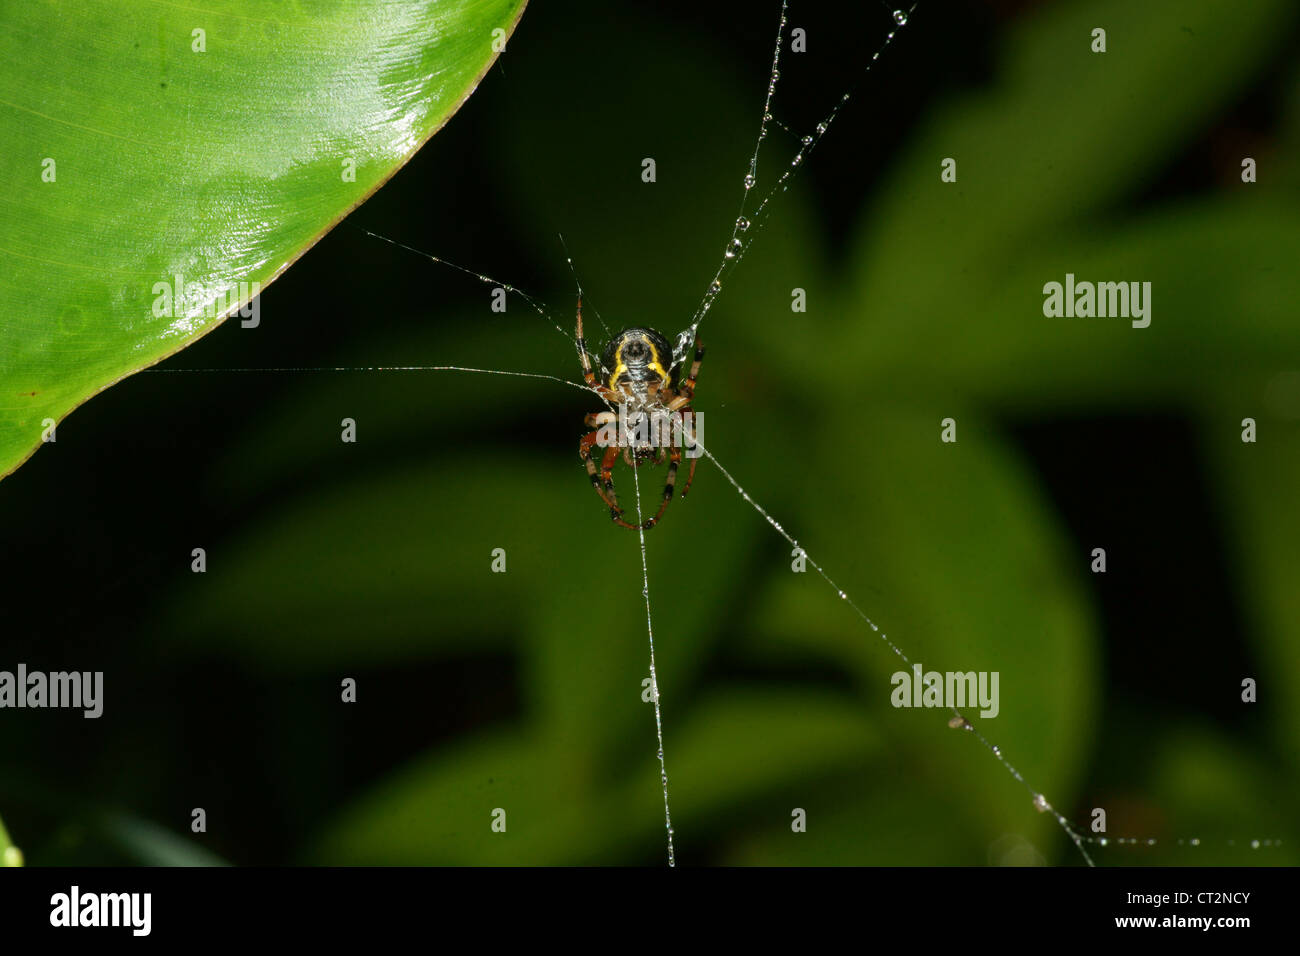 Marmorierte Kugel Spinne baut ein Netz und wartet in der Mitte, bis eine  fliegende Beute in den klebrigen Fäden gefangen wird. Fangs bereit  Stockfotografie - Alamy